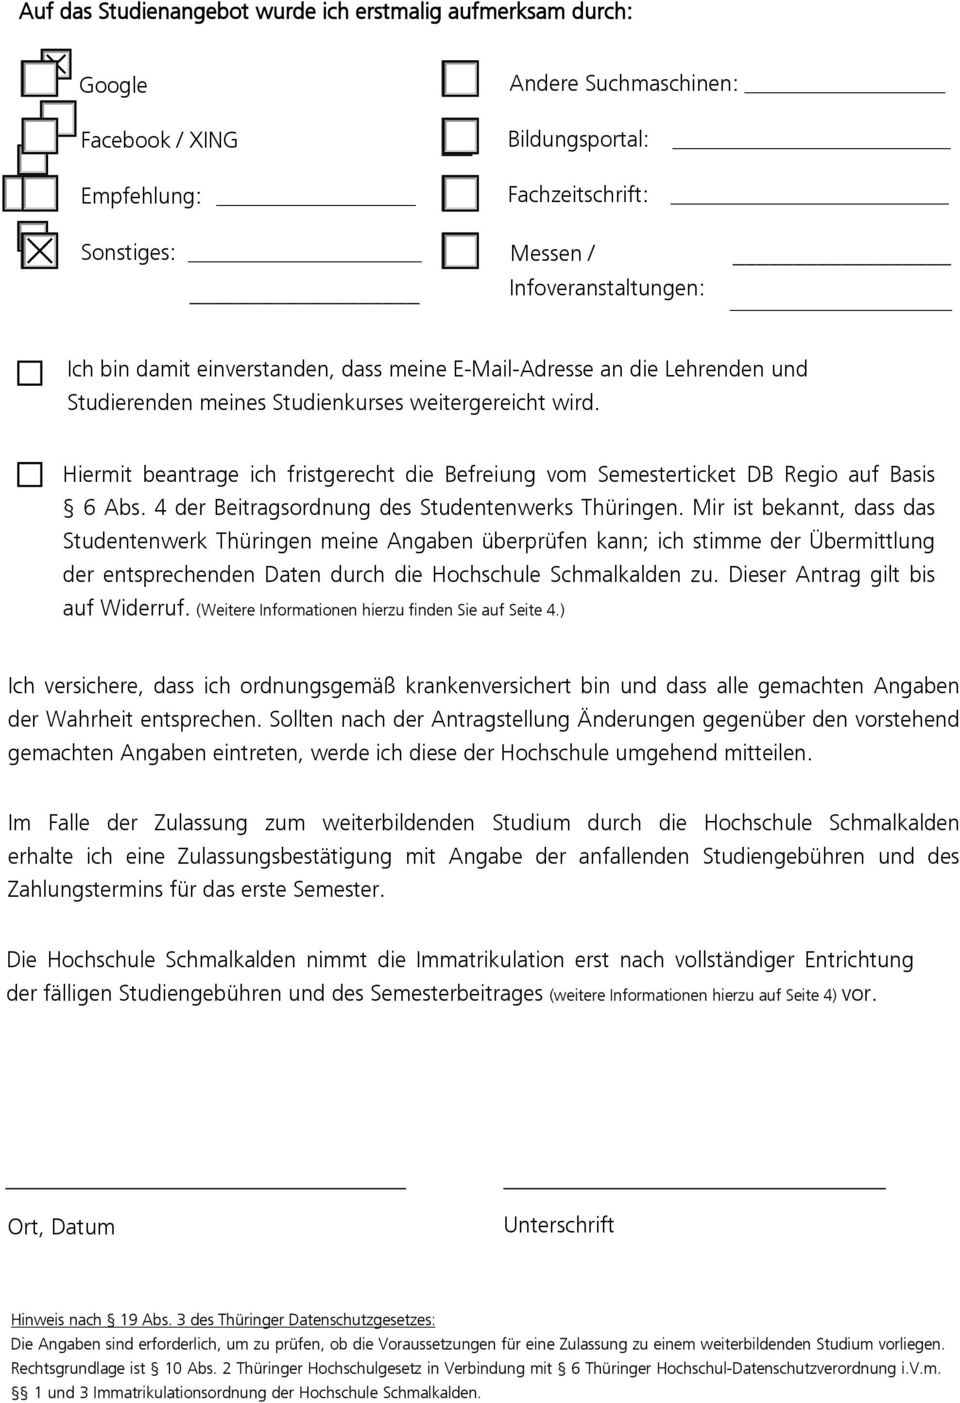 Hiermit beantrage ich fristgerecht die Befreiung vom Semesterticket DB Regio auf Basis 6 Abs. 4 der Beitragsordnung des Studentenwerks Thüringen.